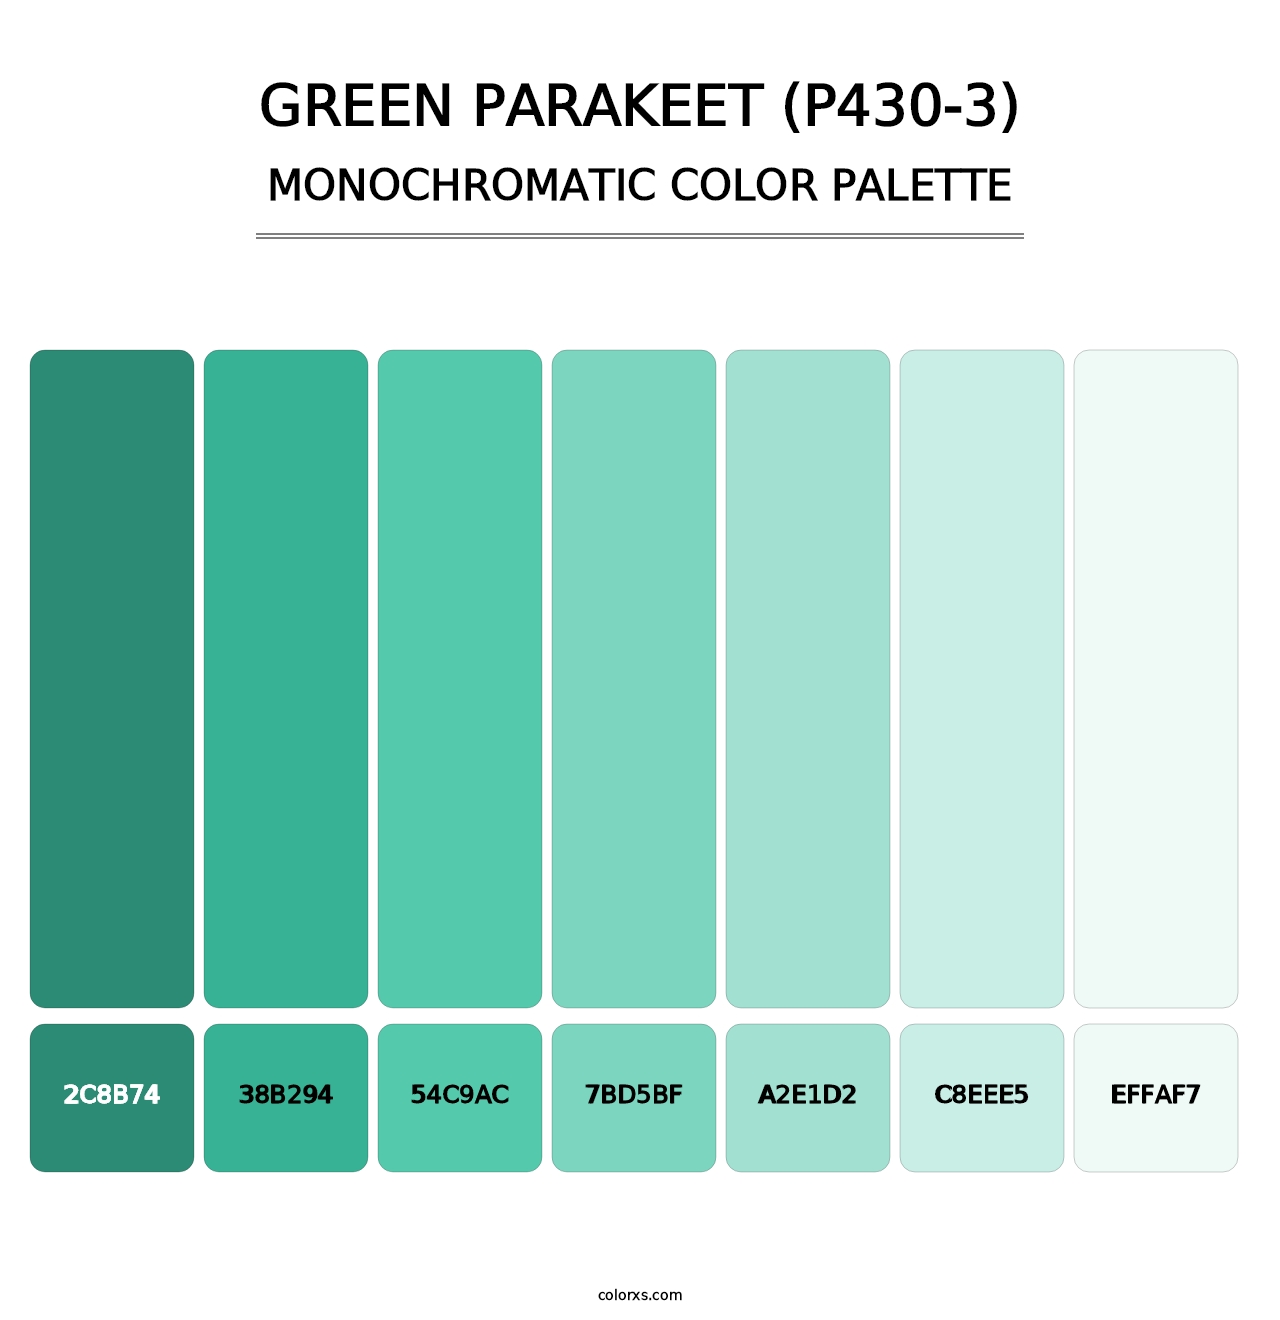 Green Parakeet (P430-3) - Monochromatic Color Palette